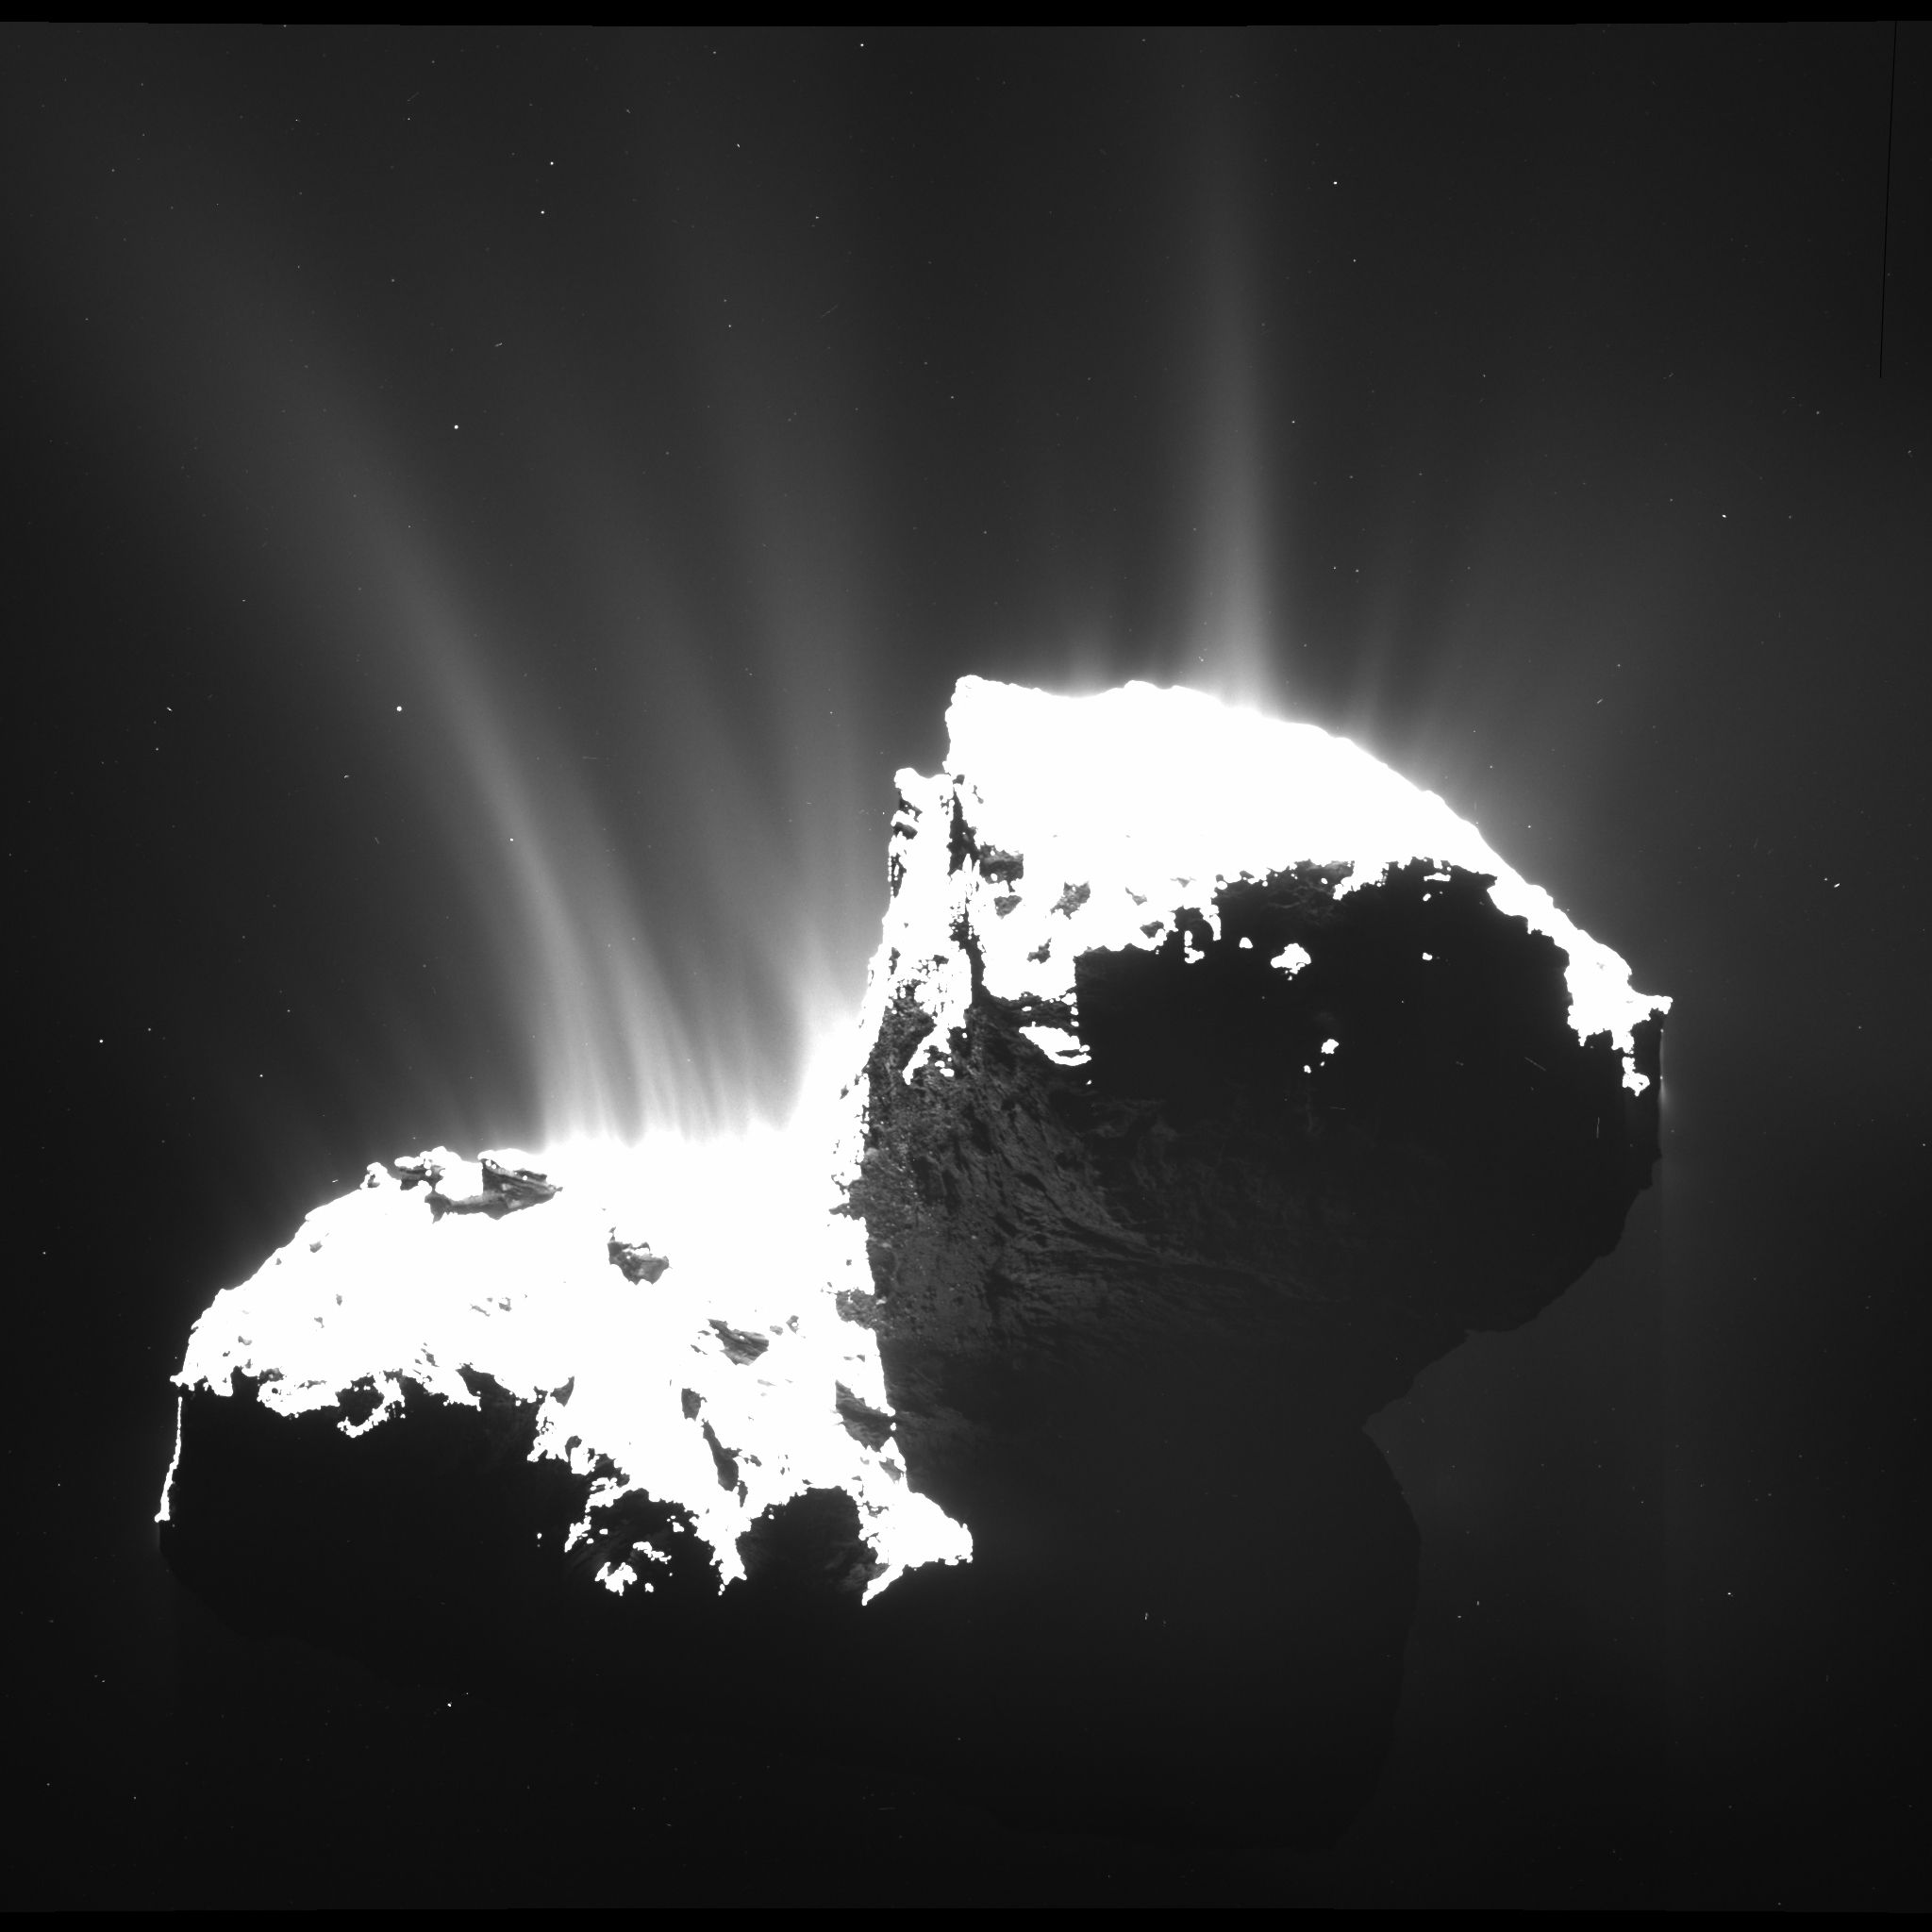 Comet_activity_22_November_2014.jpg